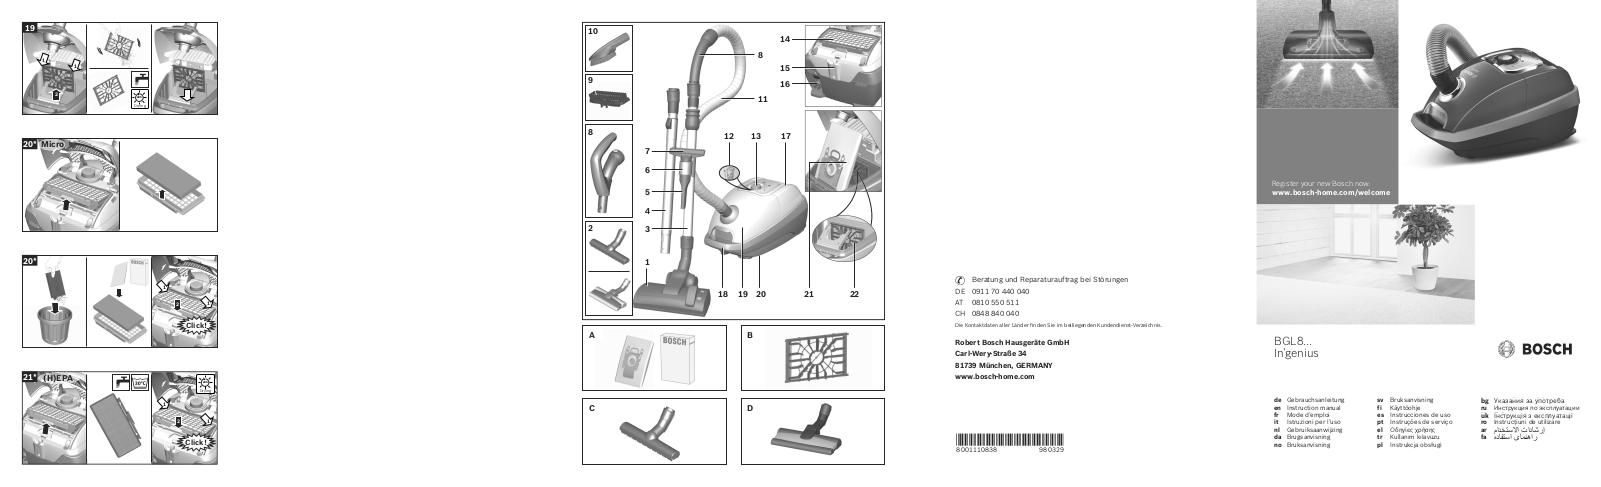 Bosch BGL 8PRO4 User manual